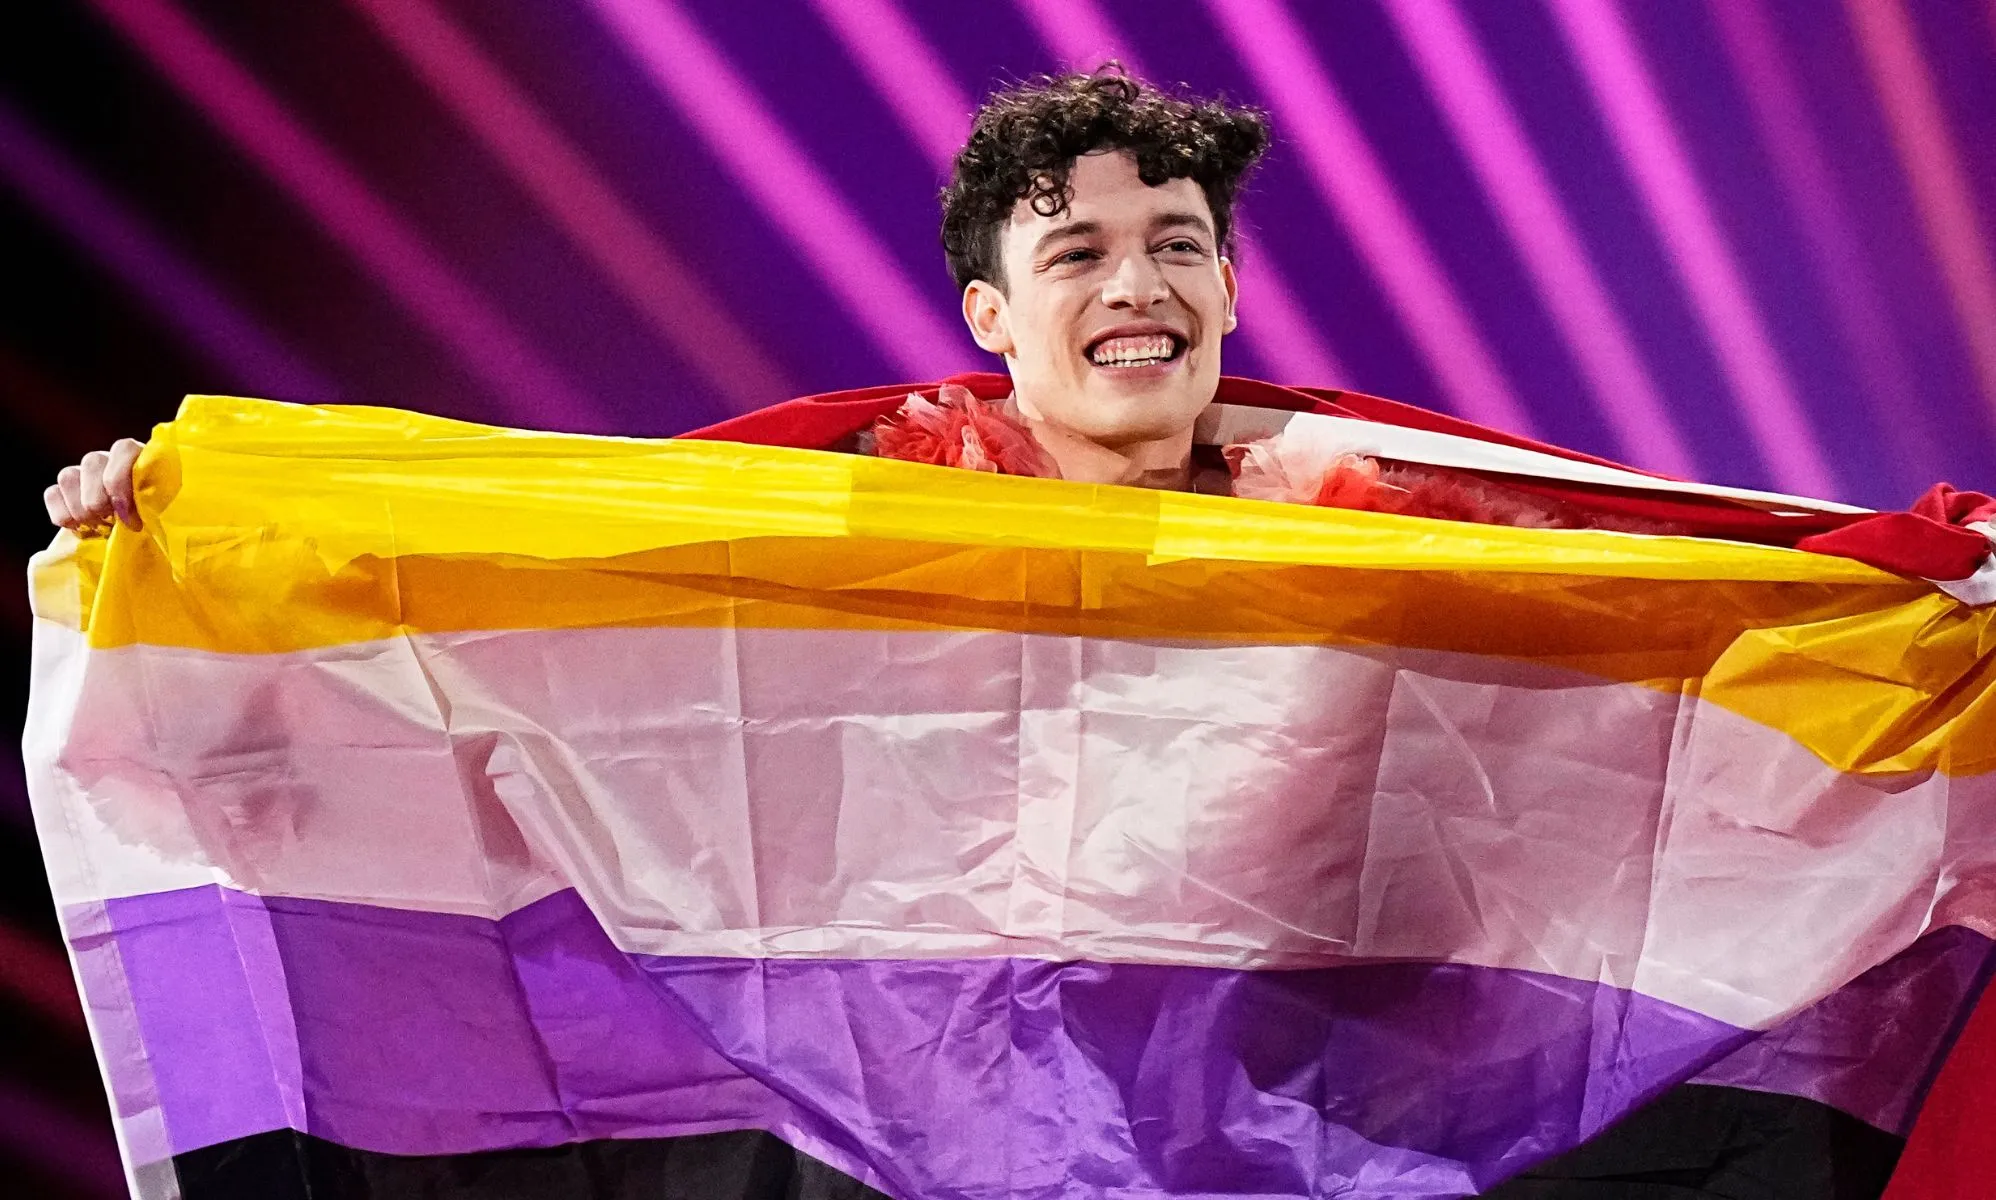 Nemo, ganador de Eurovisión, dice que la bandera no binaria no estaba permitida en la arena